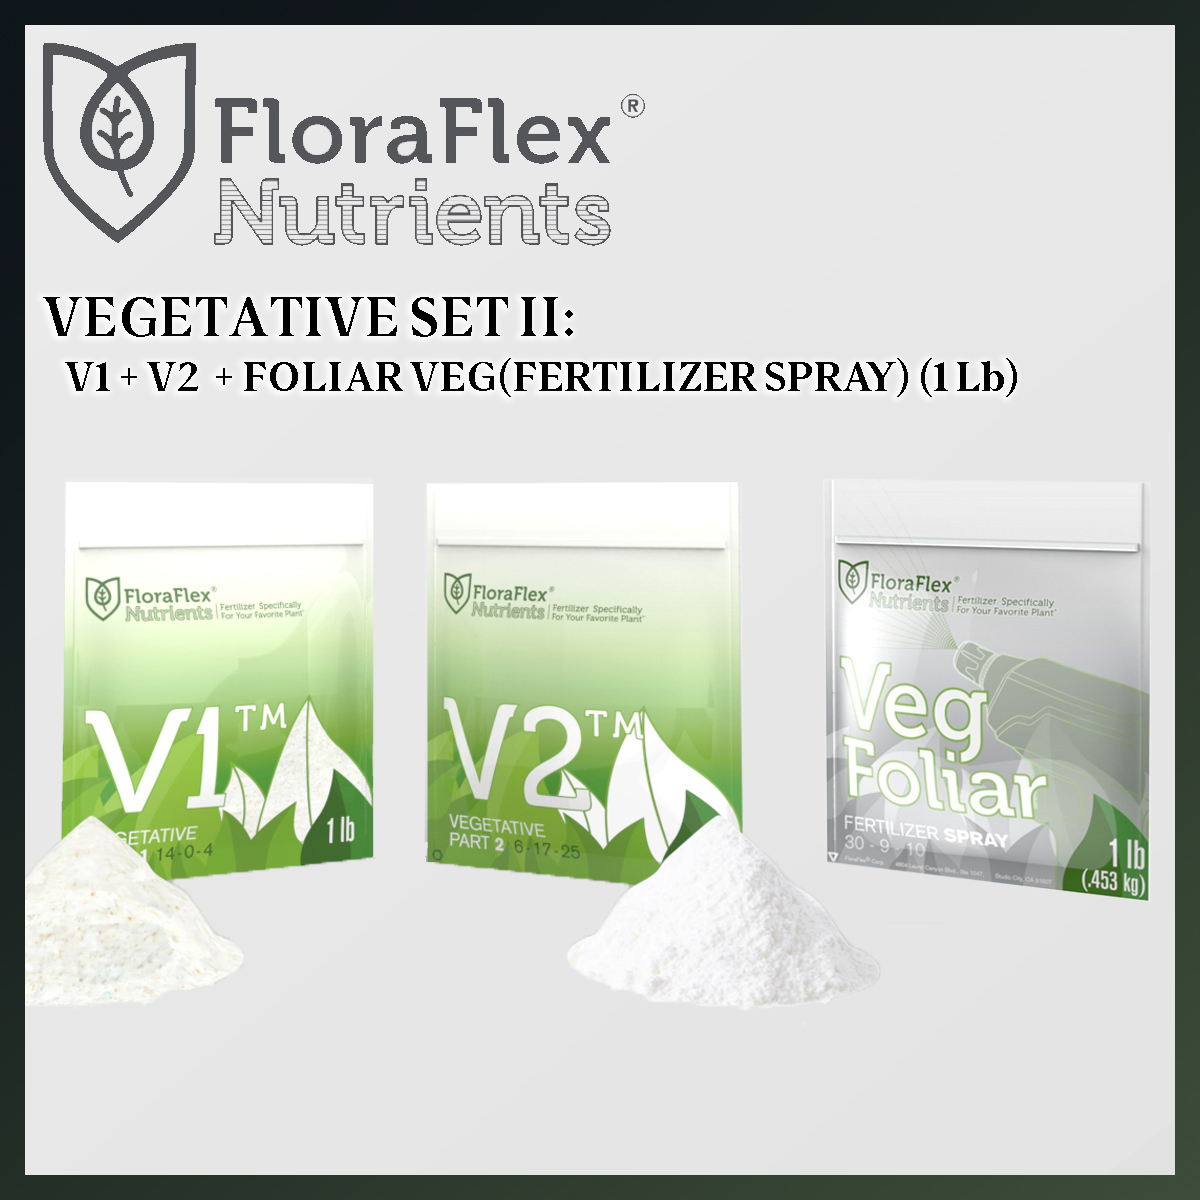 VALUED SET: FLORA FLEX VEGETATIVE V1V2 + FOLIAR